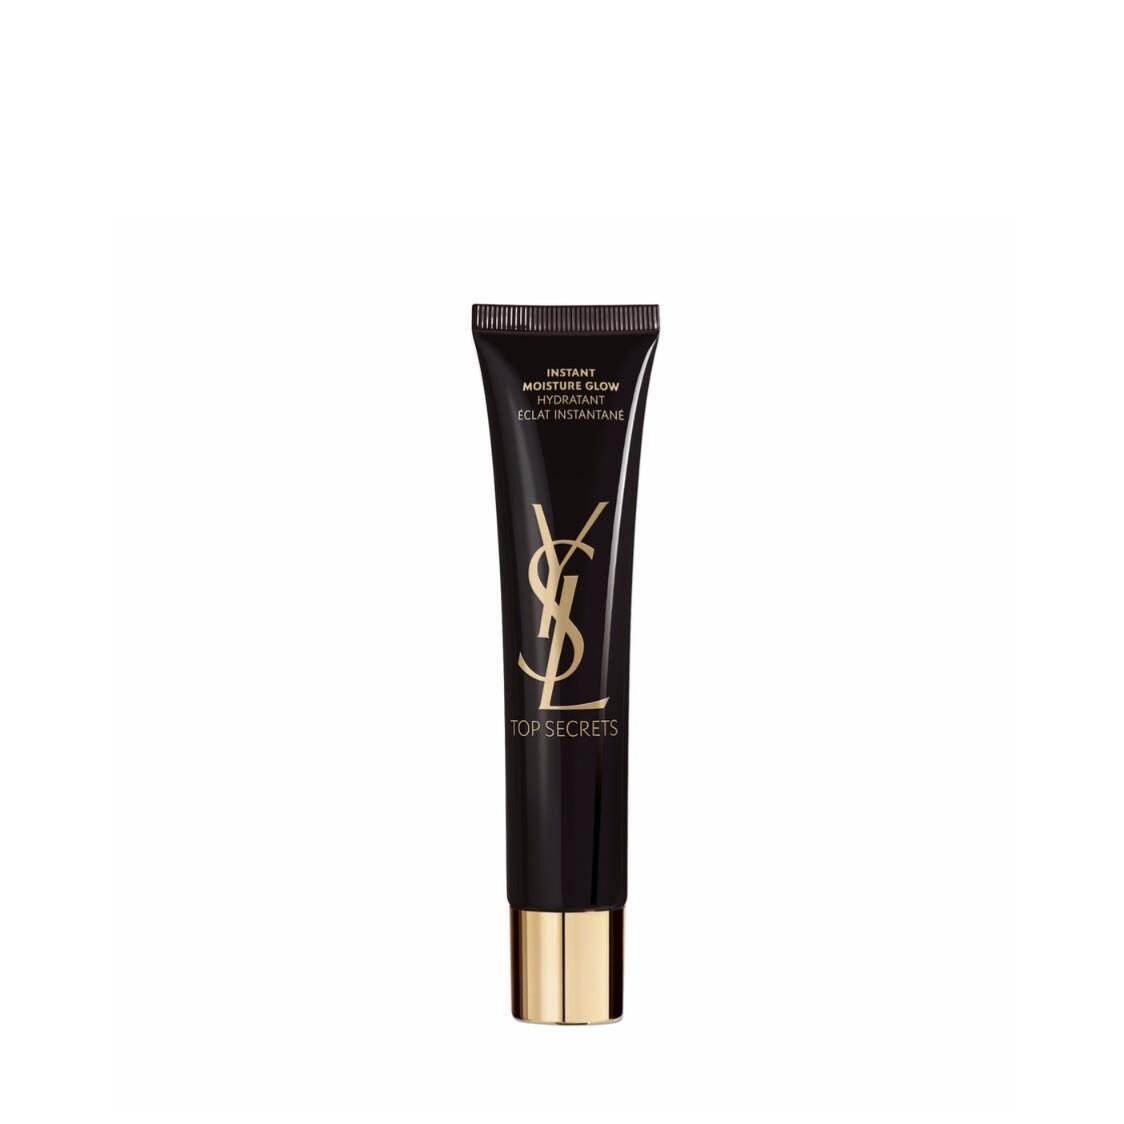 Yves Saint Laurent Beaute Top Secrets Instant Moisture Glow 40ml